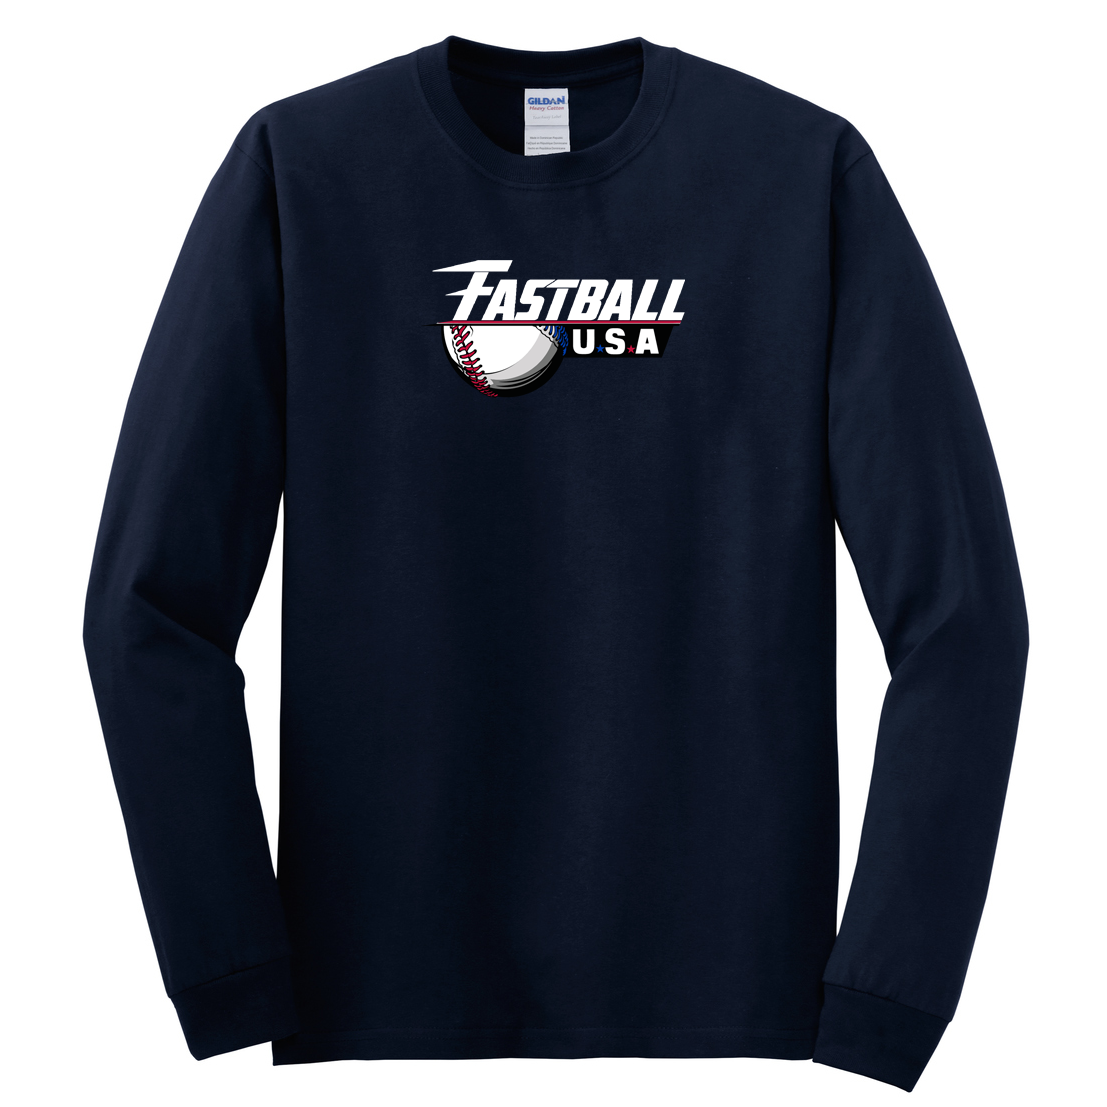 Fastball USA Baseball Cotton Long Sleeve Shirt